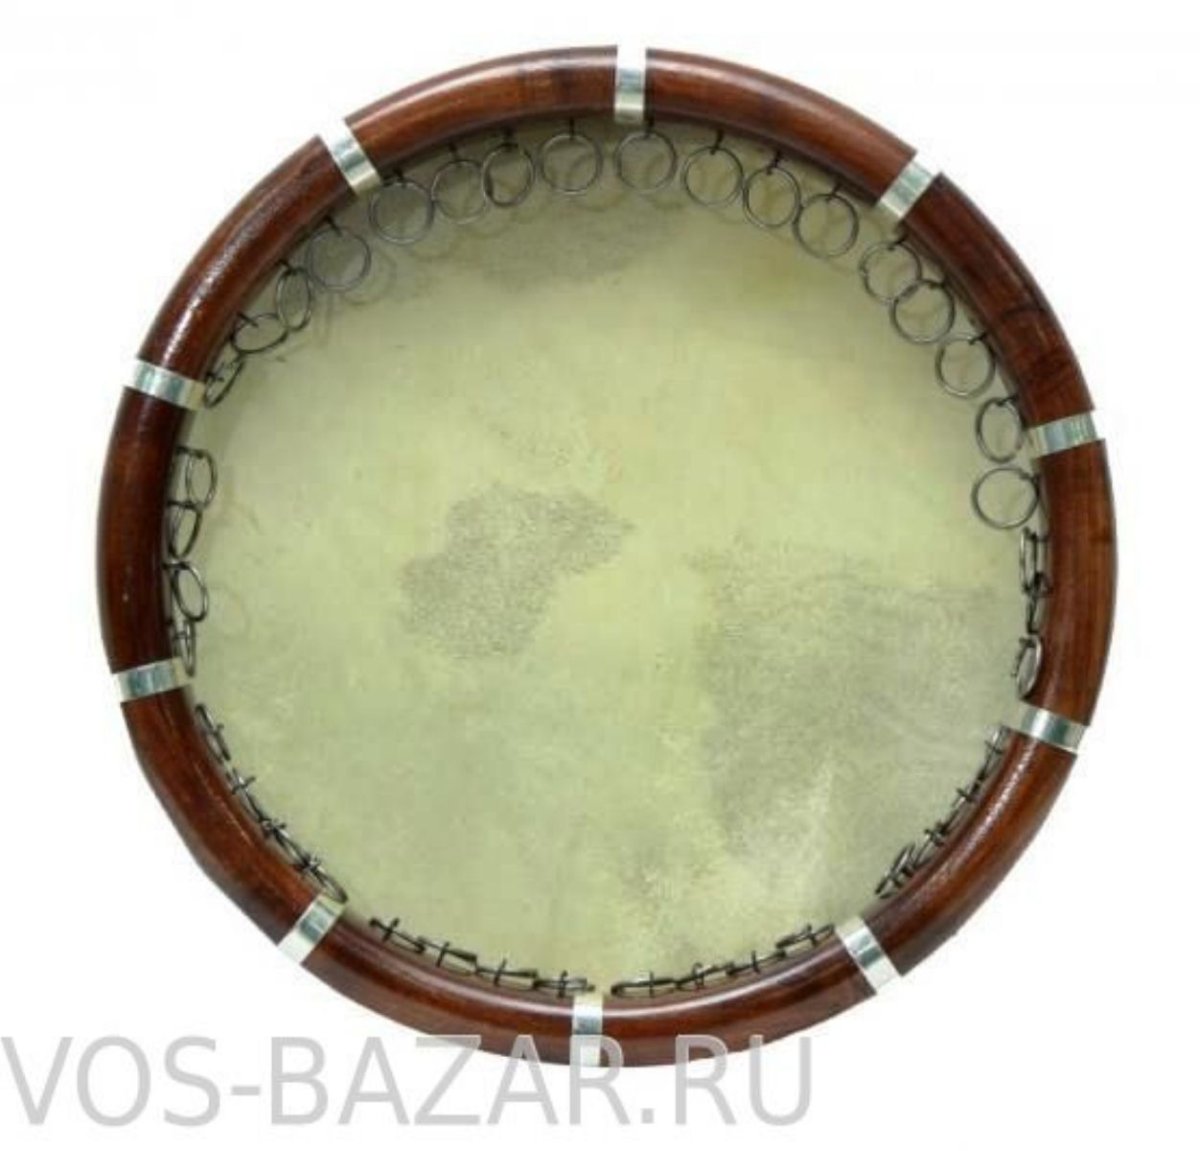 Дойра музыкальный инструмент Таджикистана